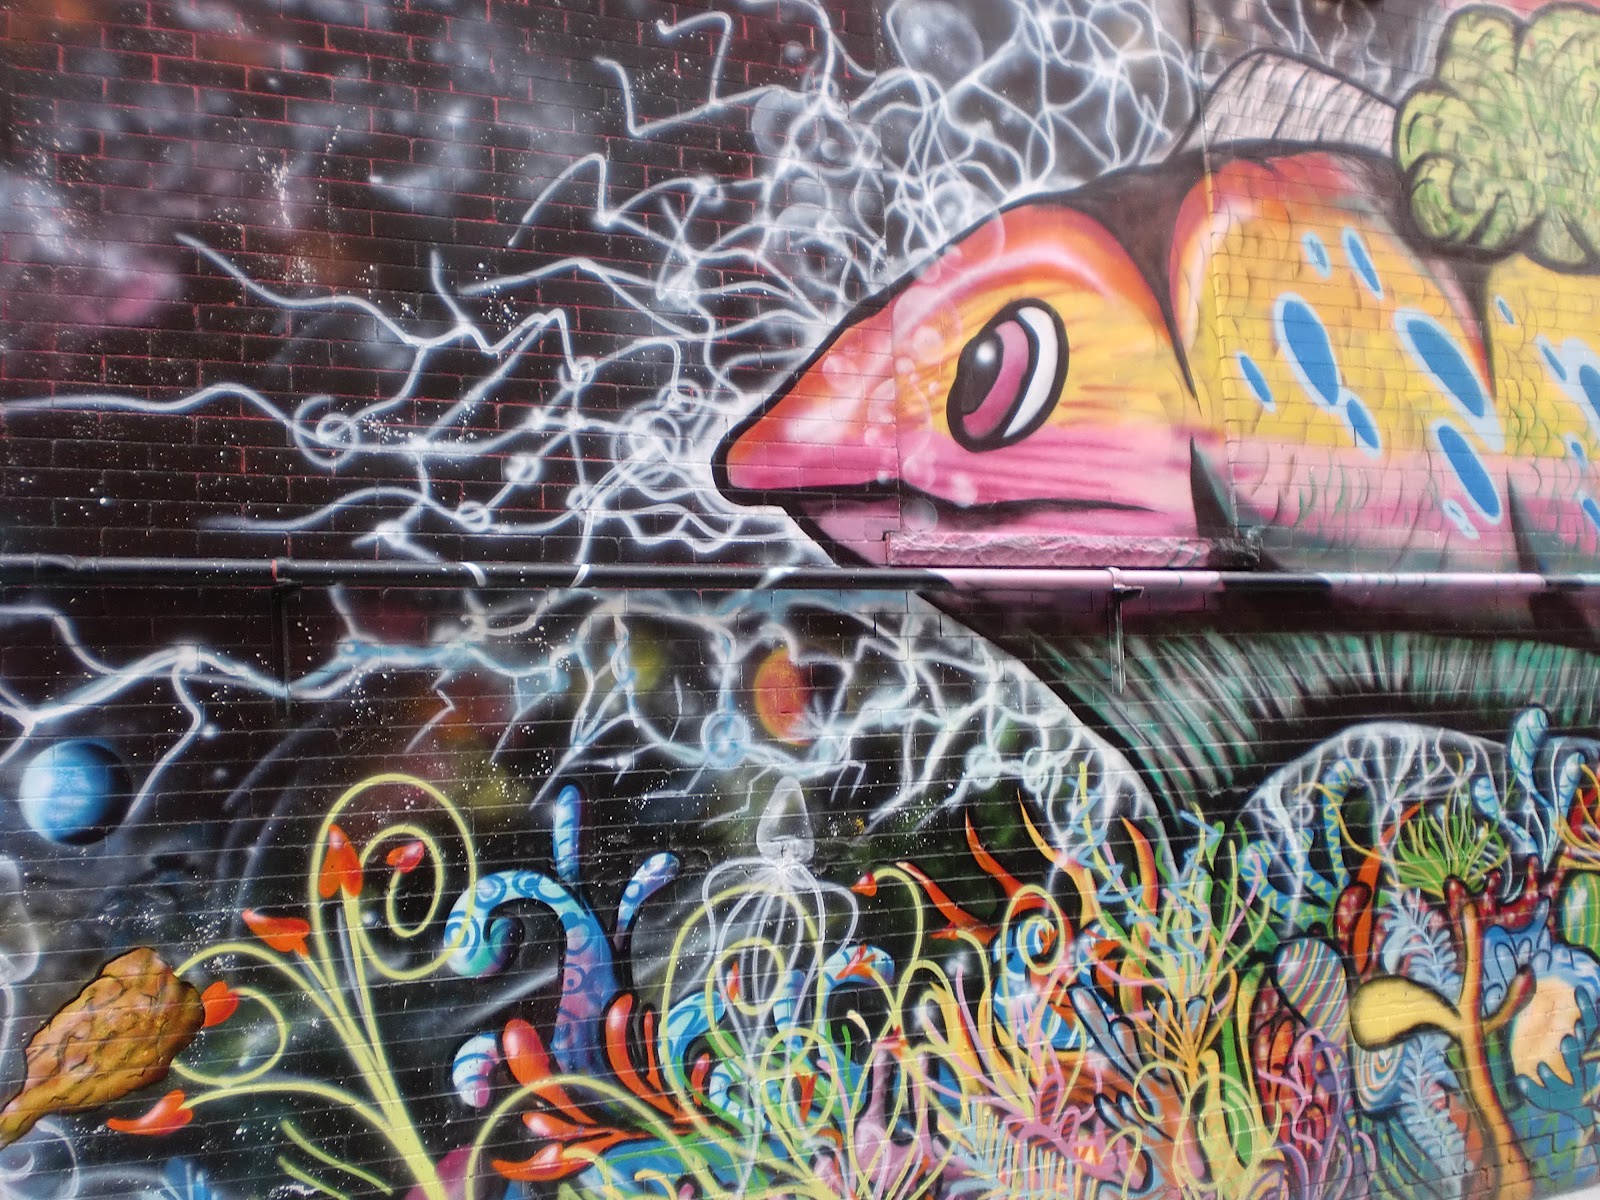 Colfax Avenue: Murals and Graffiti on Colfax